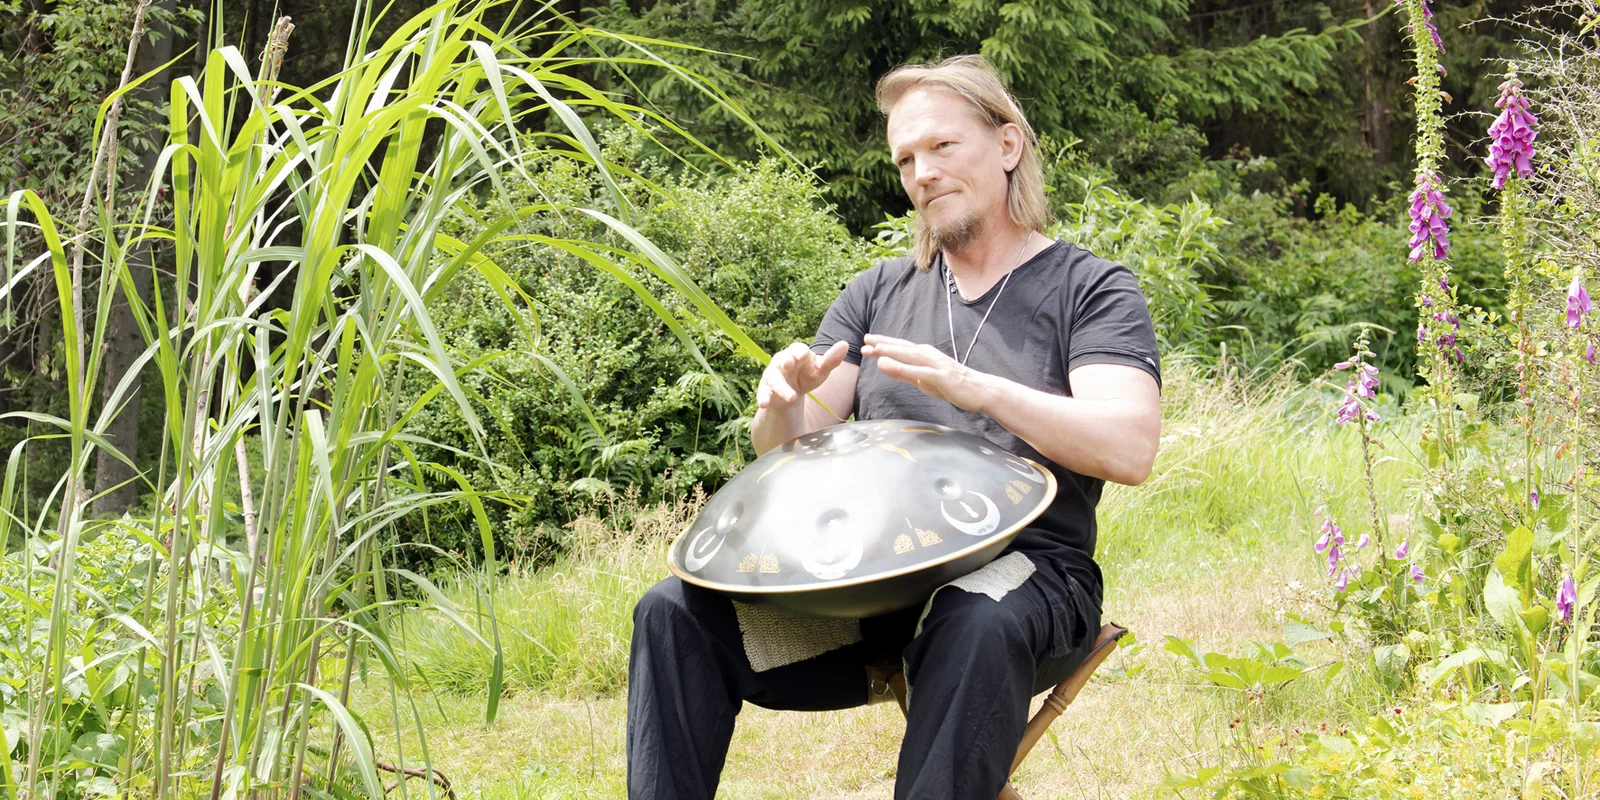 Rolf Predotka (alsia Hangklang) spielt auf einem Stuhl sitzend auf einer Hangdrum. Im Hintergrund ist ein grüner Garten zu sehen.